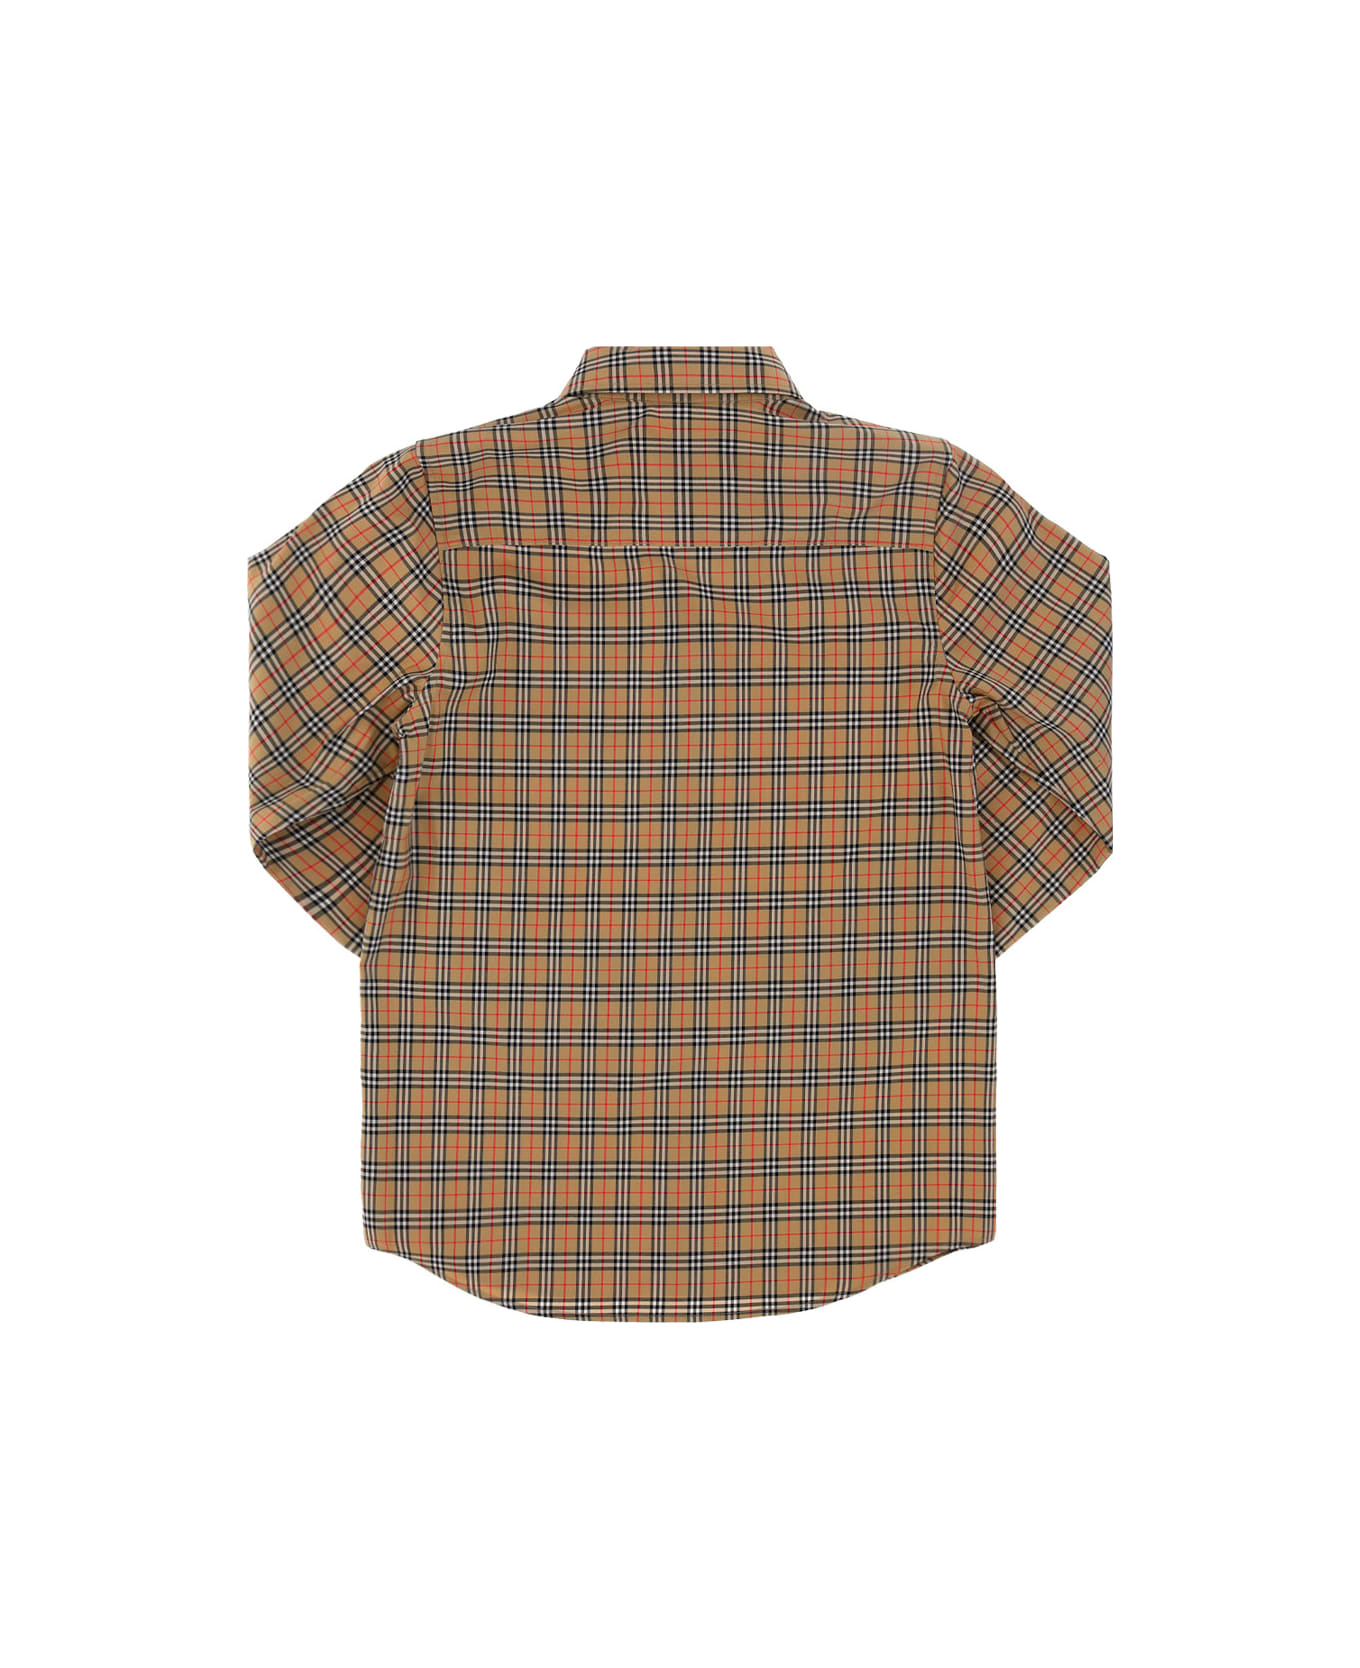 Burberry Owen Shirt For Boy